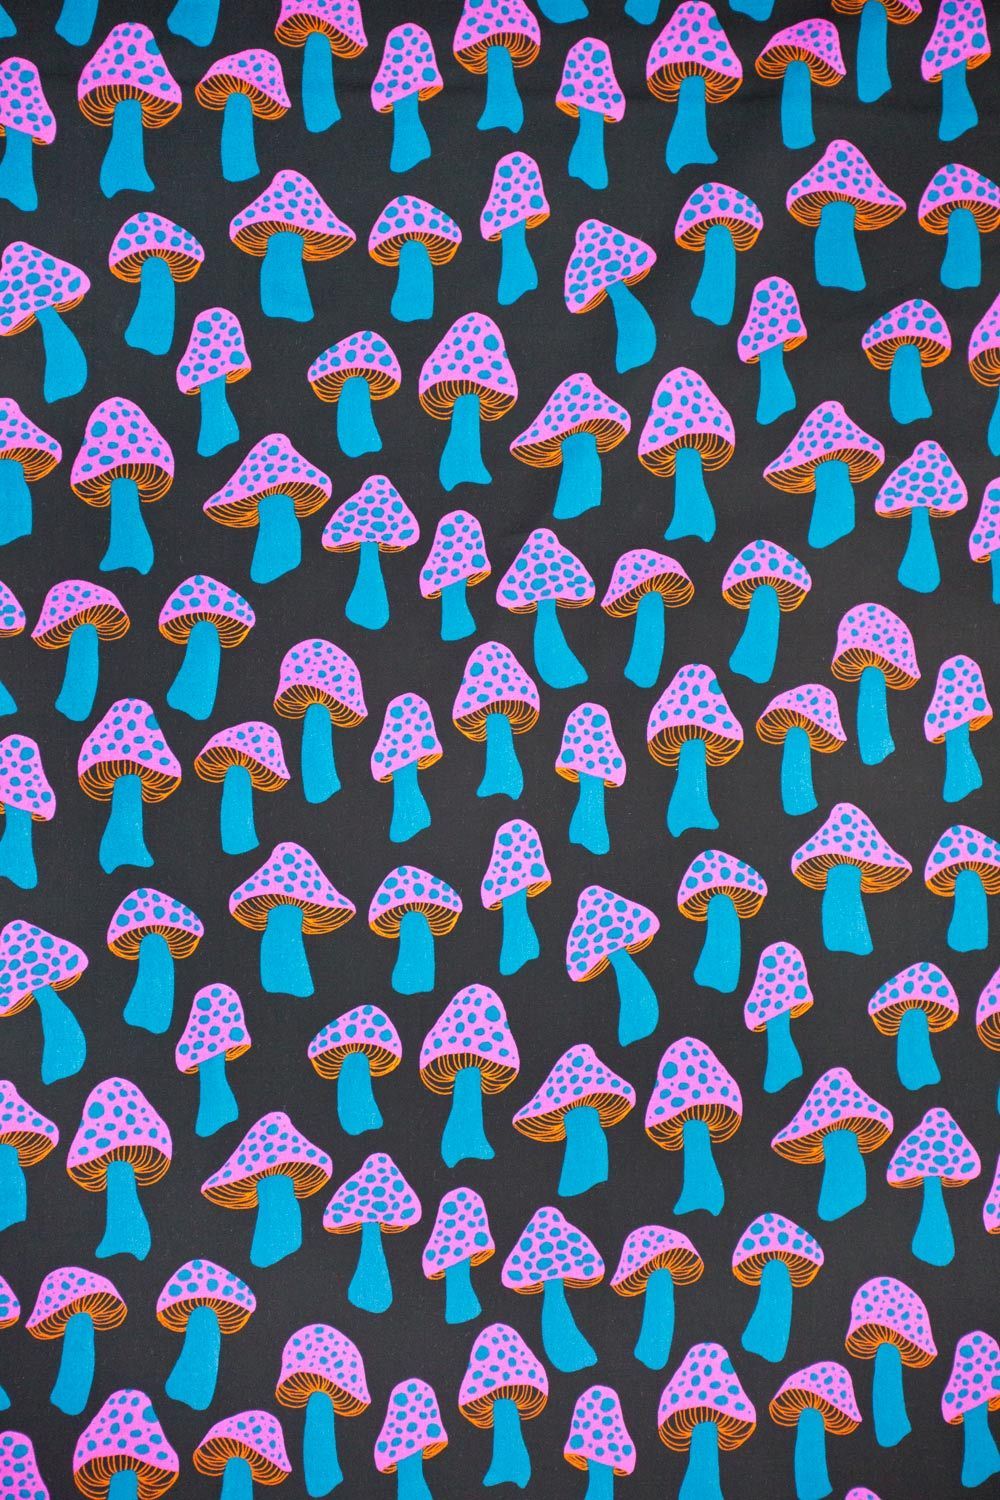 Mushroom wallpaper ideas. mushroom art, psychedelic art, hippie art